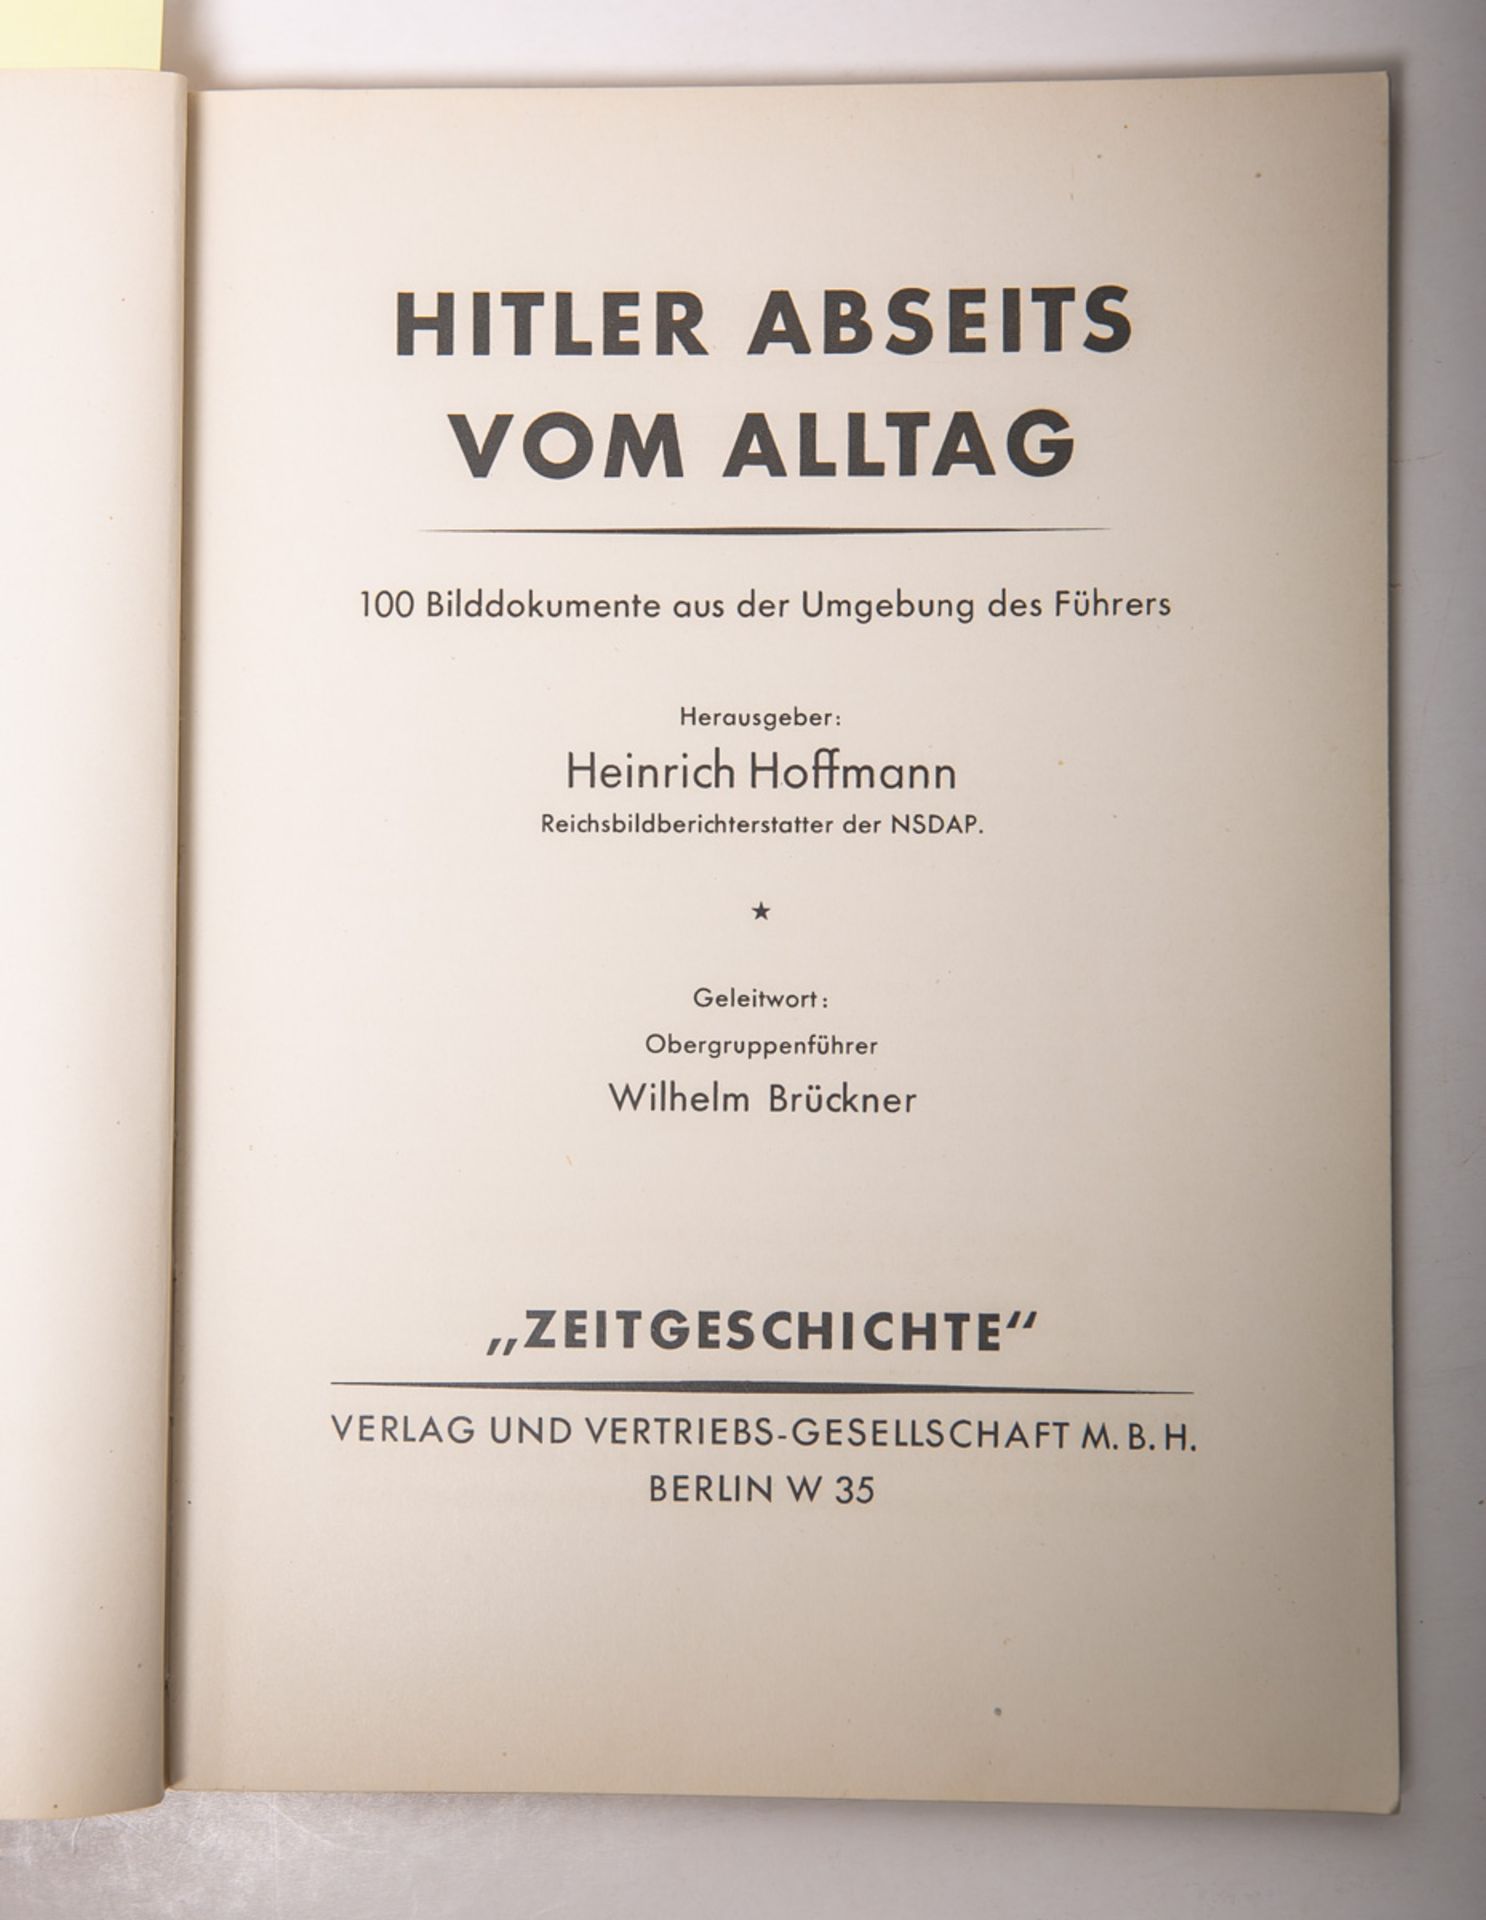 Hoffmann, Heinrich (Hrsg.), "Hitler abseits vom Alltag"